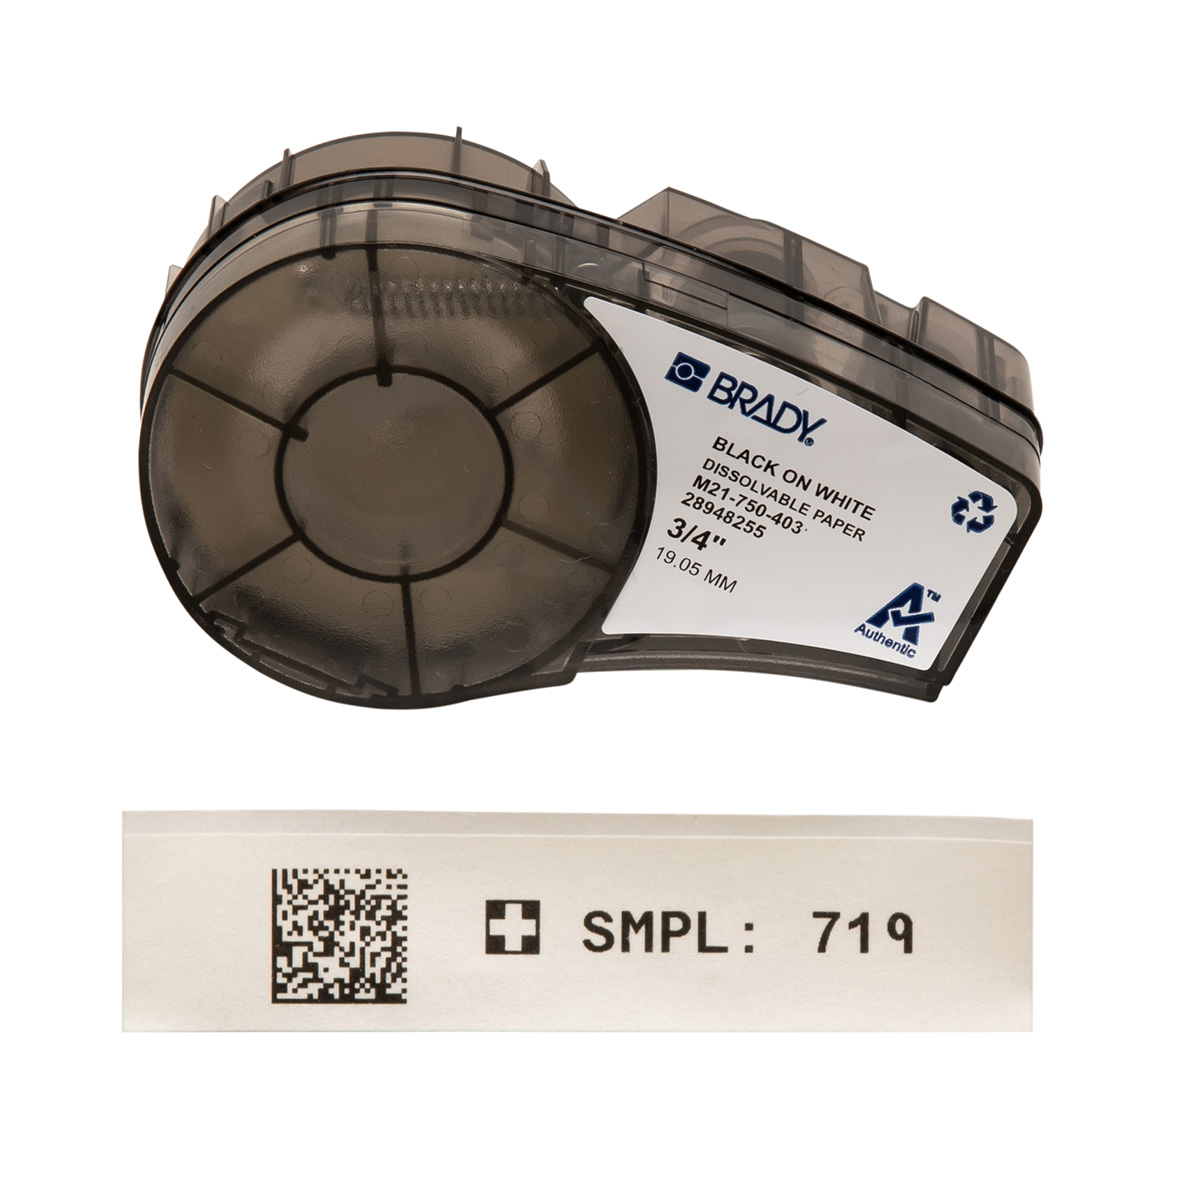 Étiquettes en papier solubles dans l’eau pour étiqueteuses M211 et M210